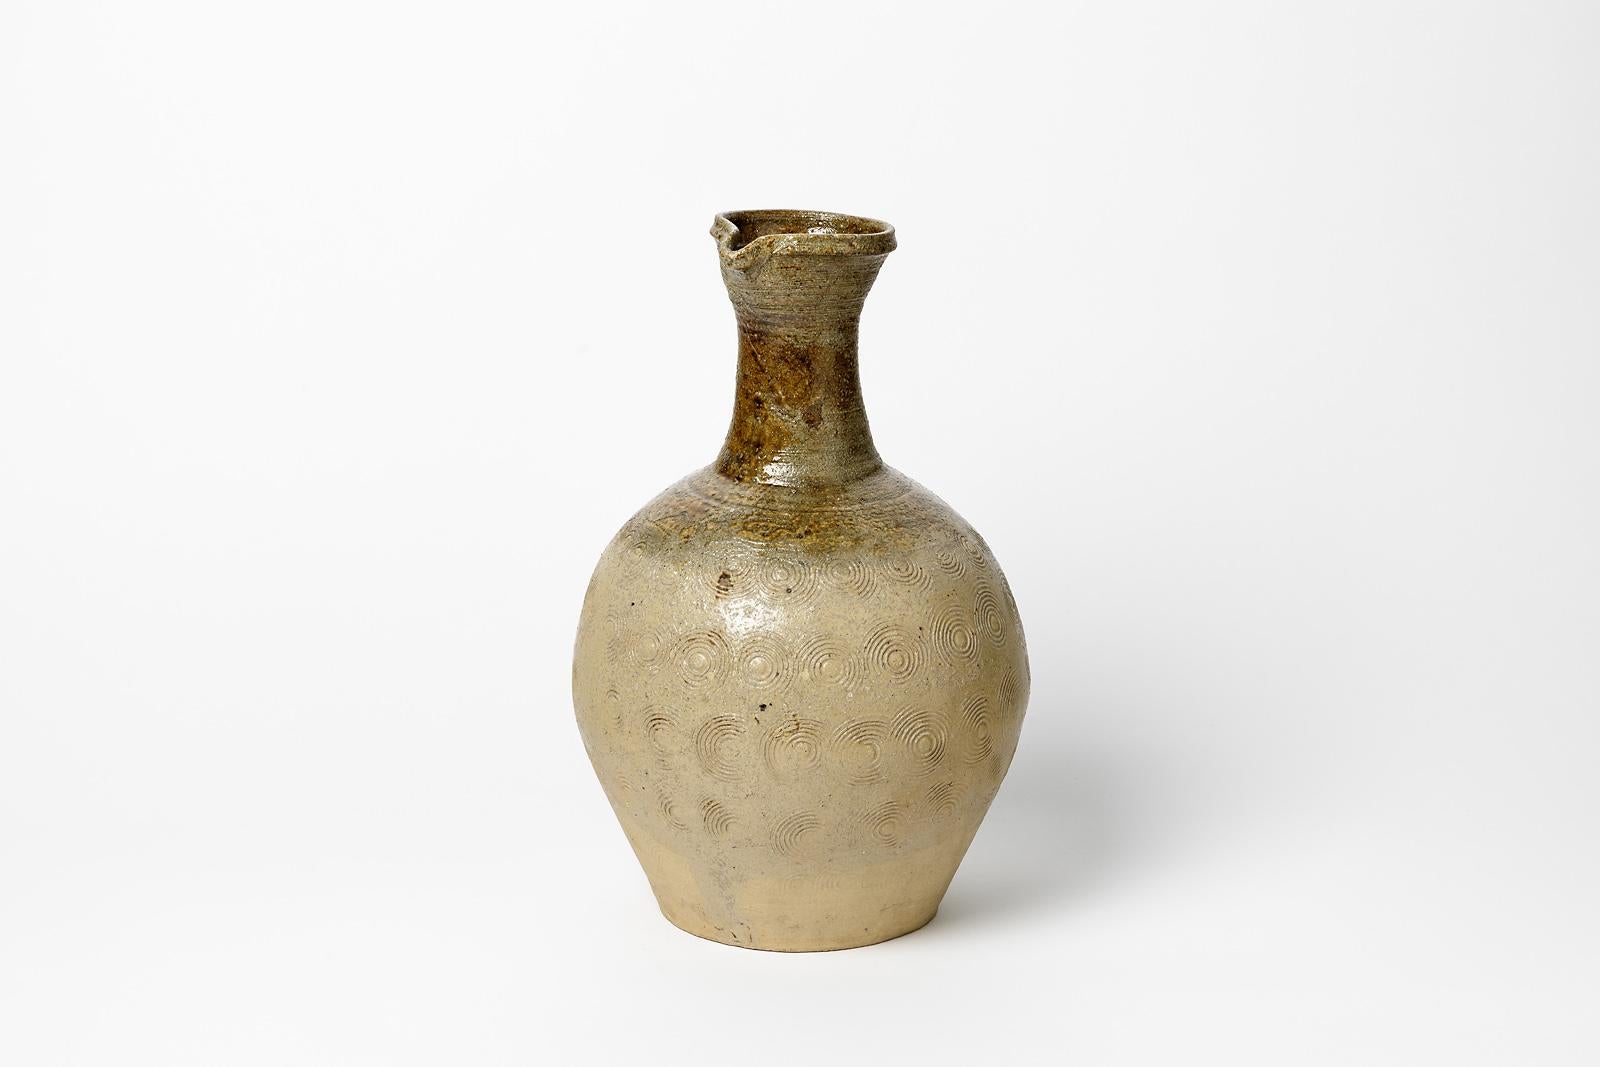 Französische handgemachte Keramik

Original Steingut Keramik Vase mit weißen und braunen Farben

Original perfekter Zustand

Um 1970

Maße: Höhe: 29 cm Groß 17 cm.